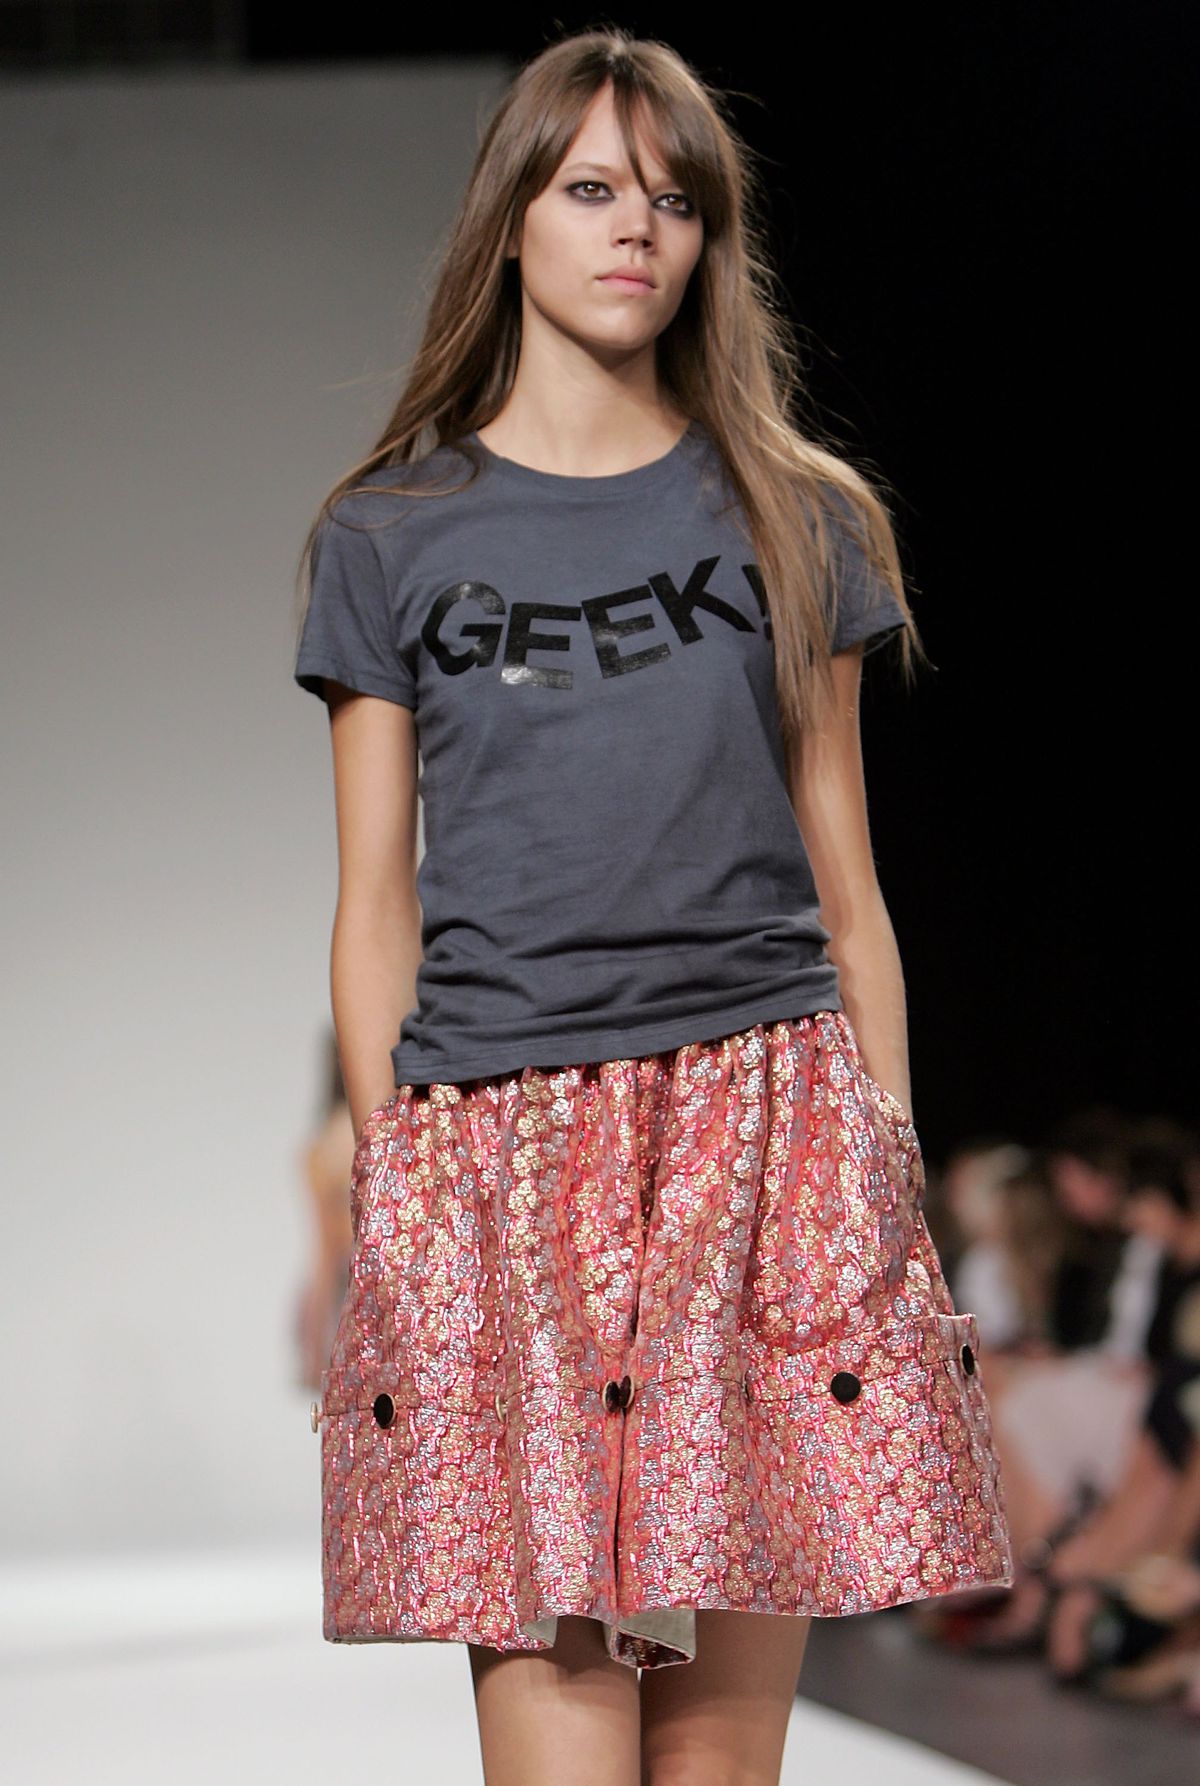 A model wears a “Geek!” shirt on the runway.